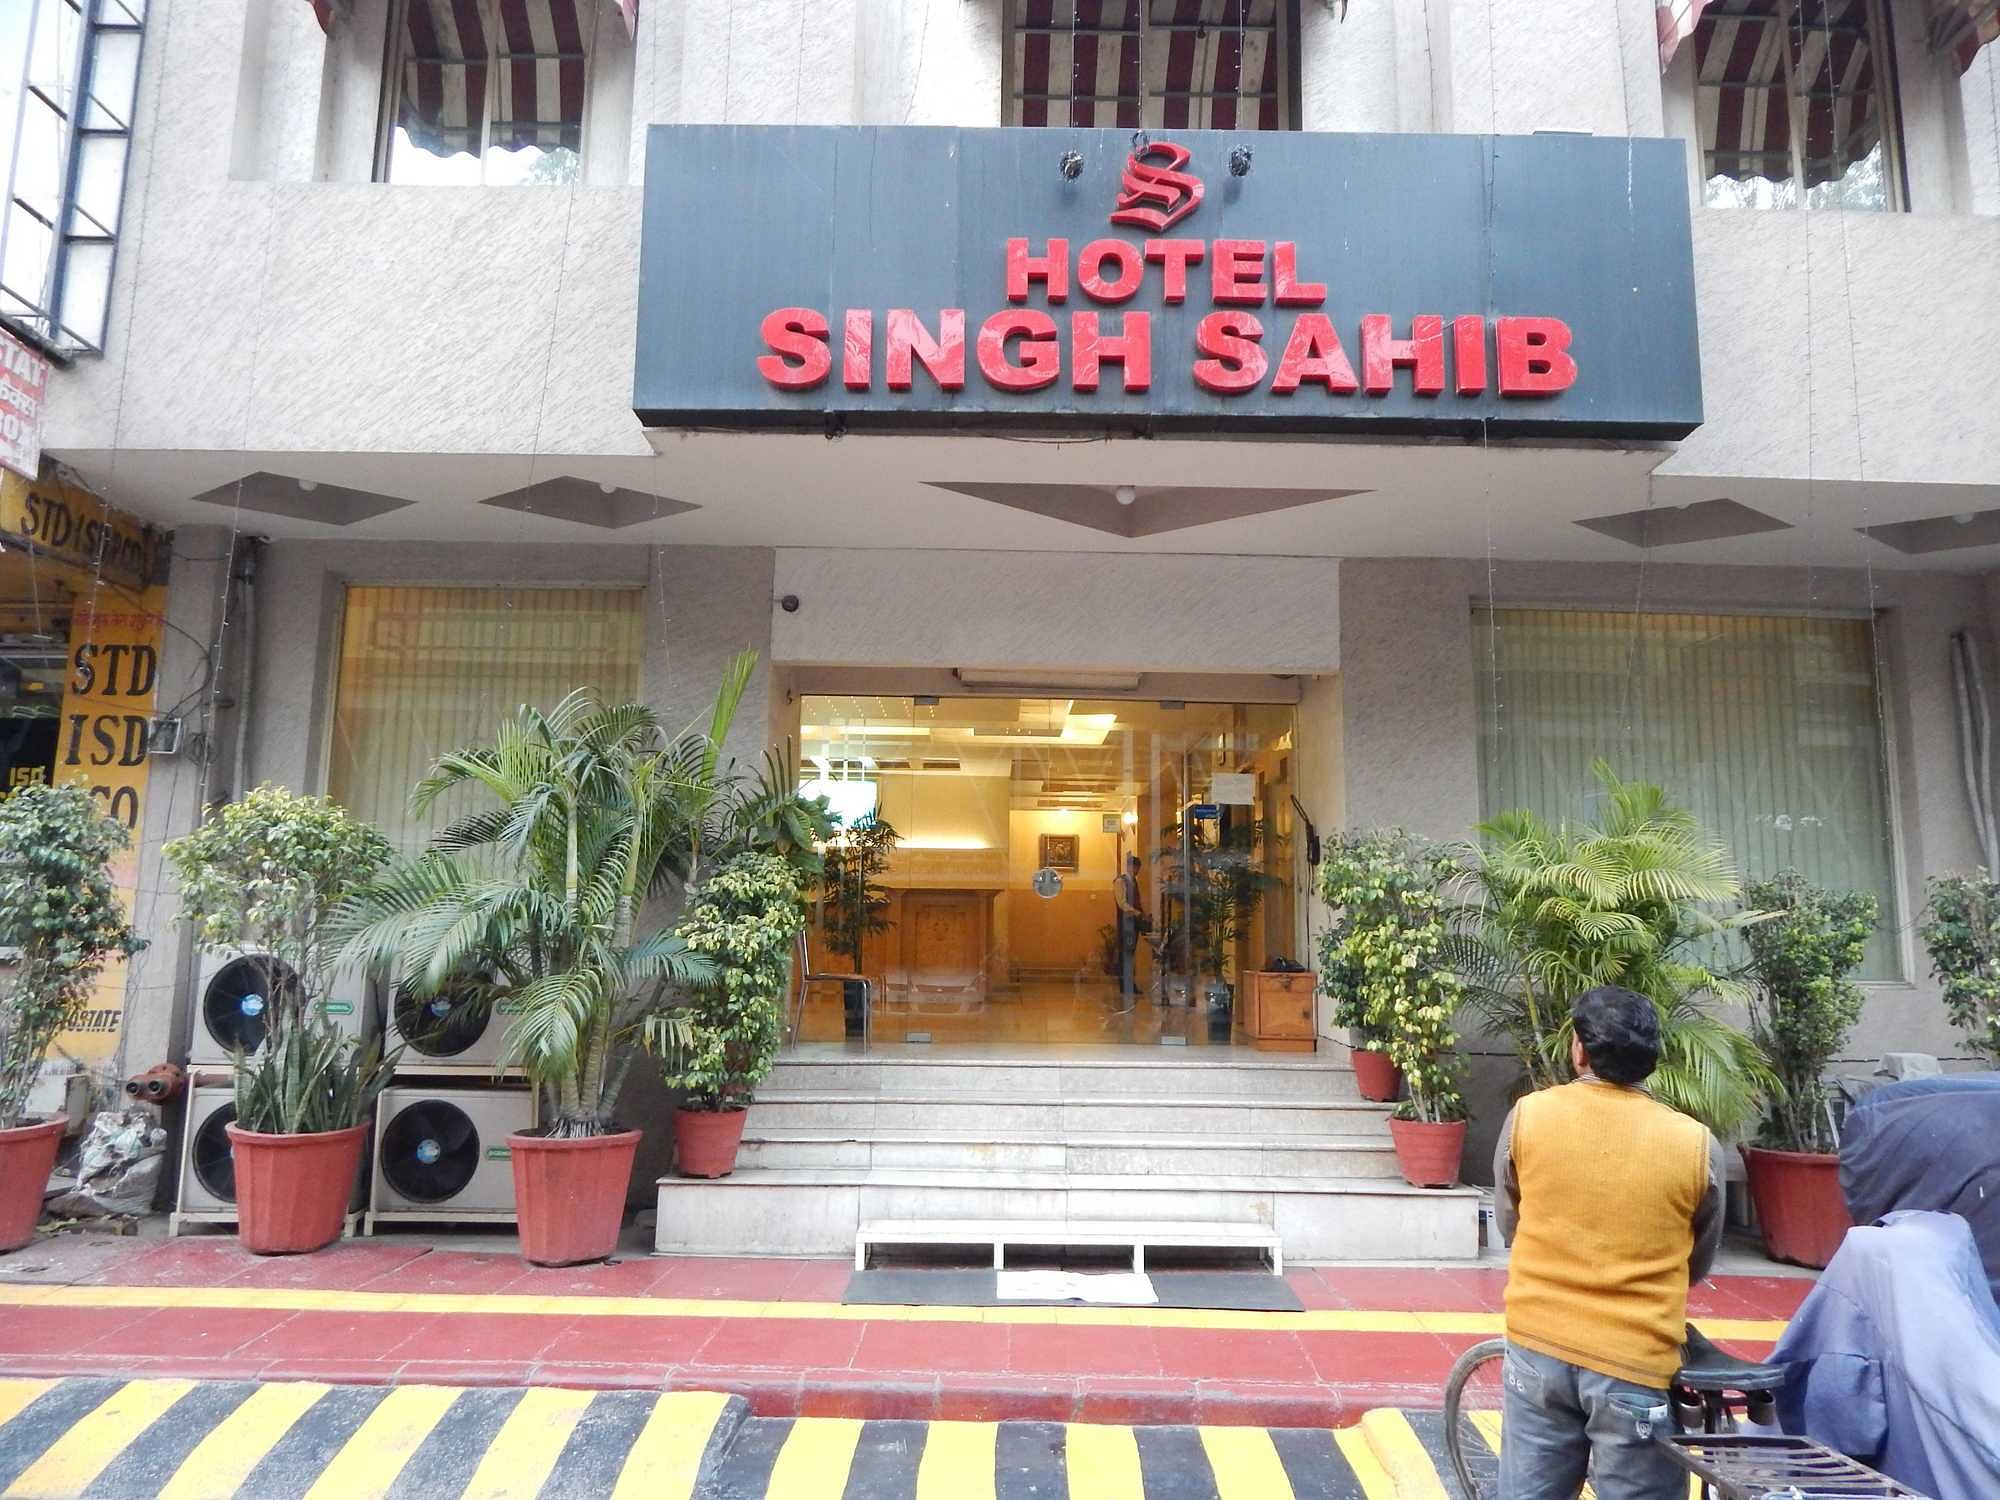 Hotel Singh Sahib in Karol Bagh, Delhi